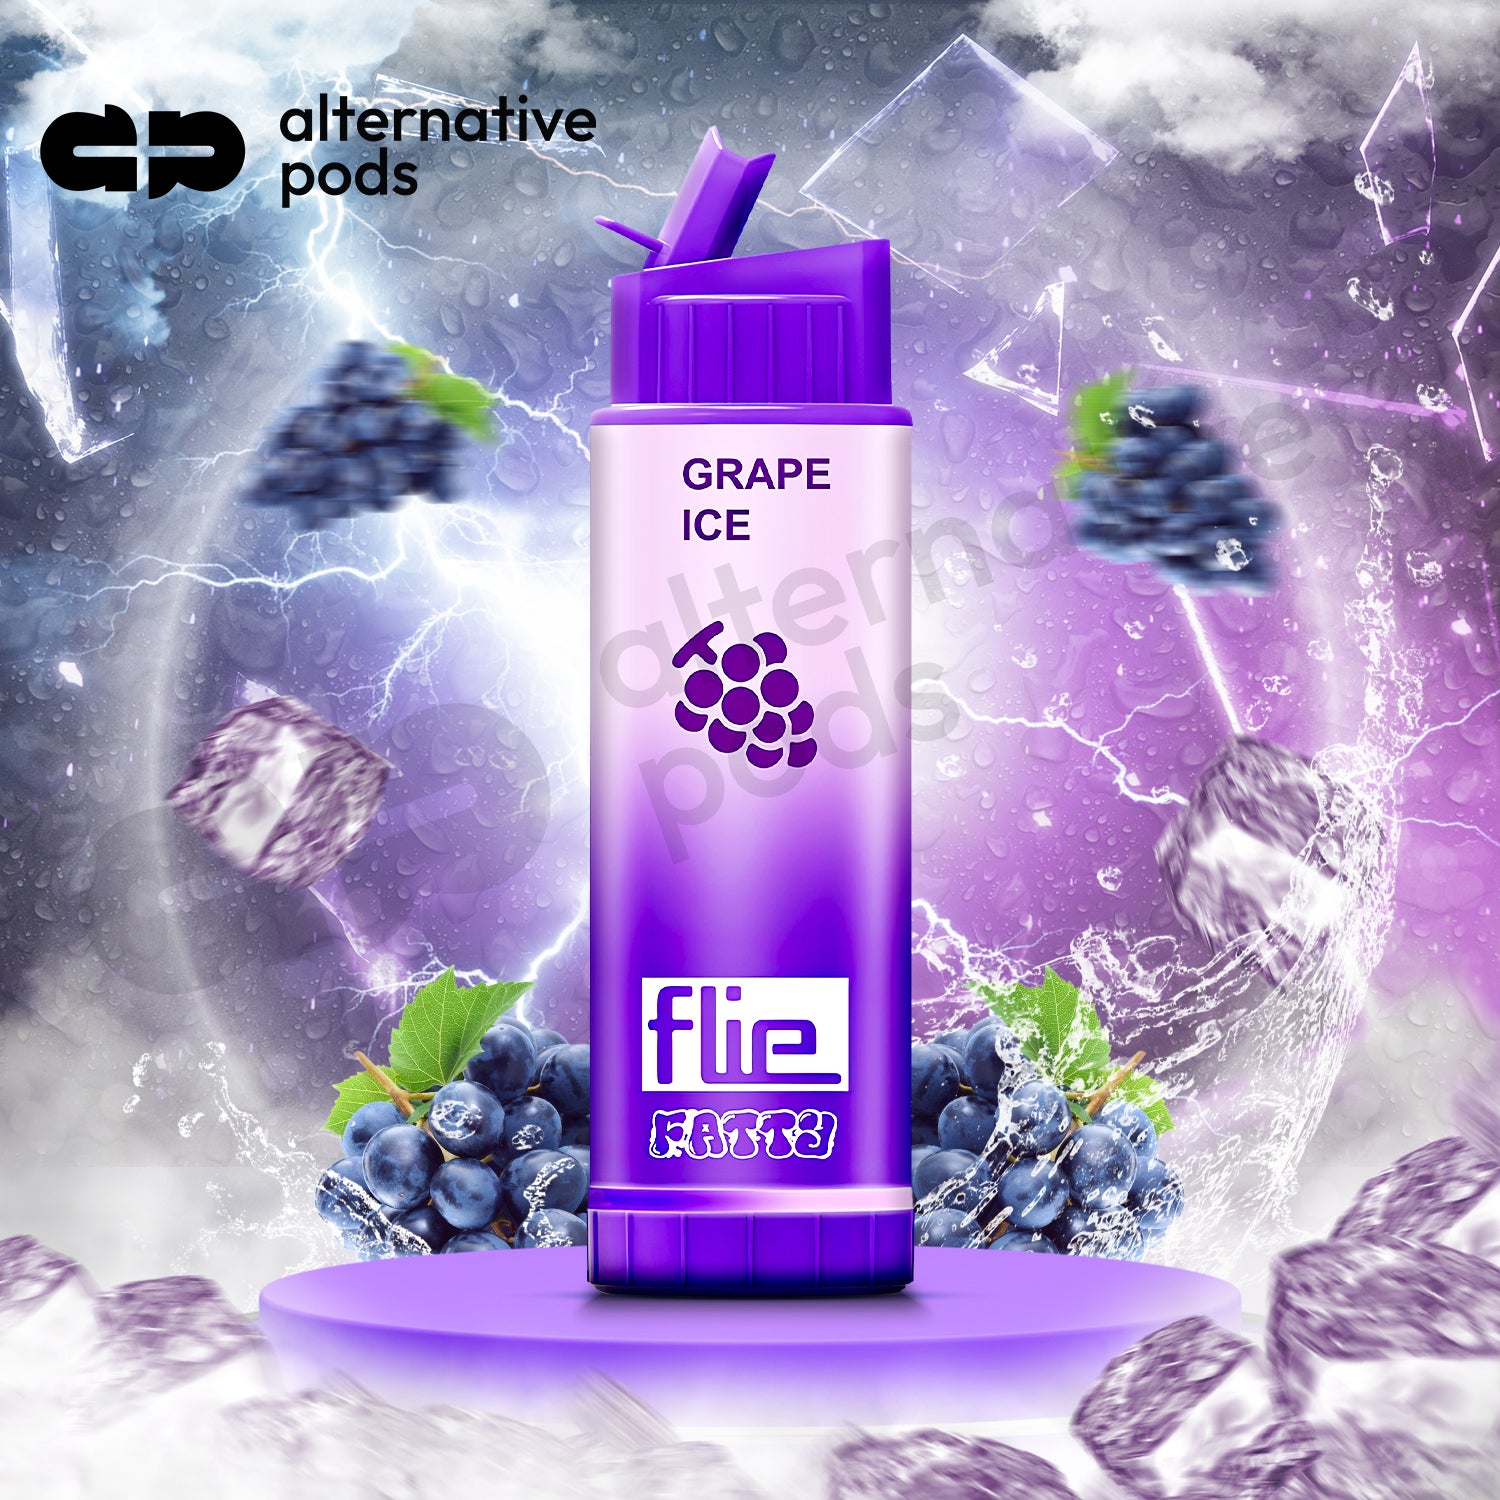 Flie Fatty 8000 Puffs Disposable Vape - Grape Ice